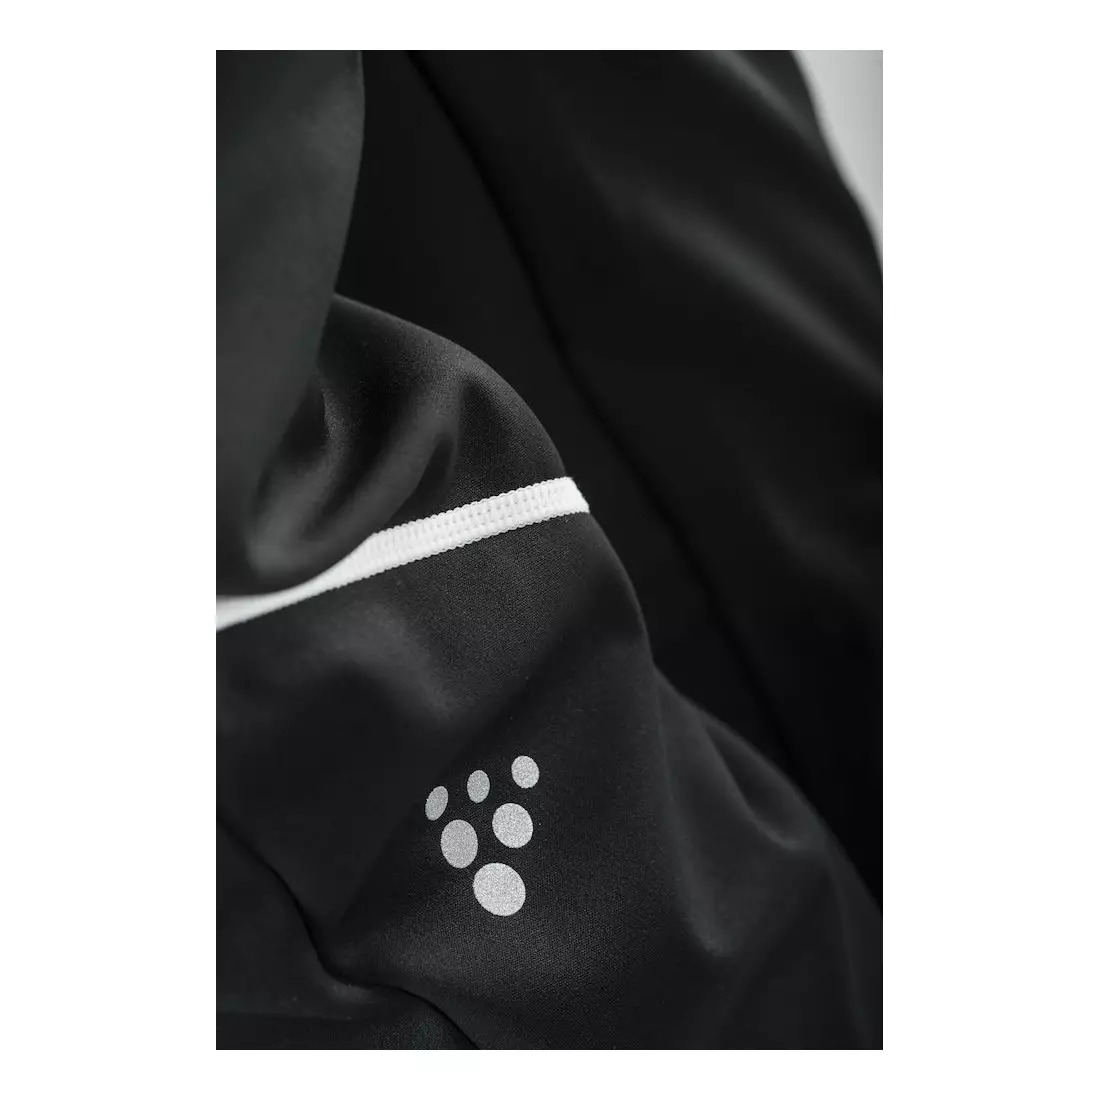 CRAFT XC Force Pant dámské zateplené sportovní kalhoty 1905249-999900